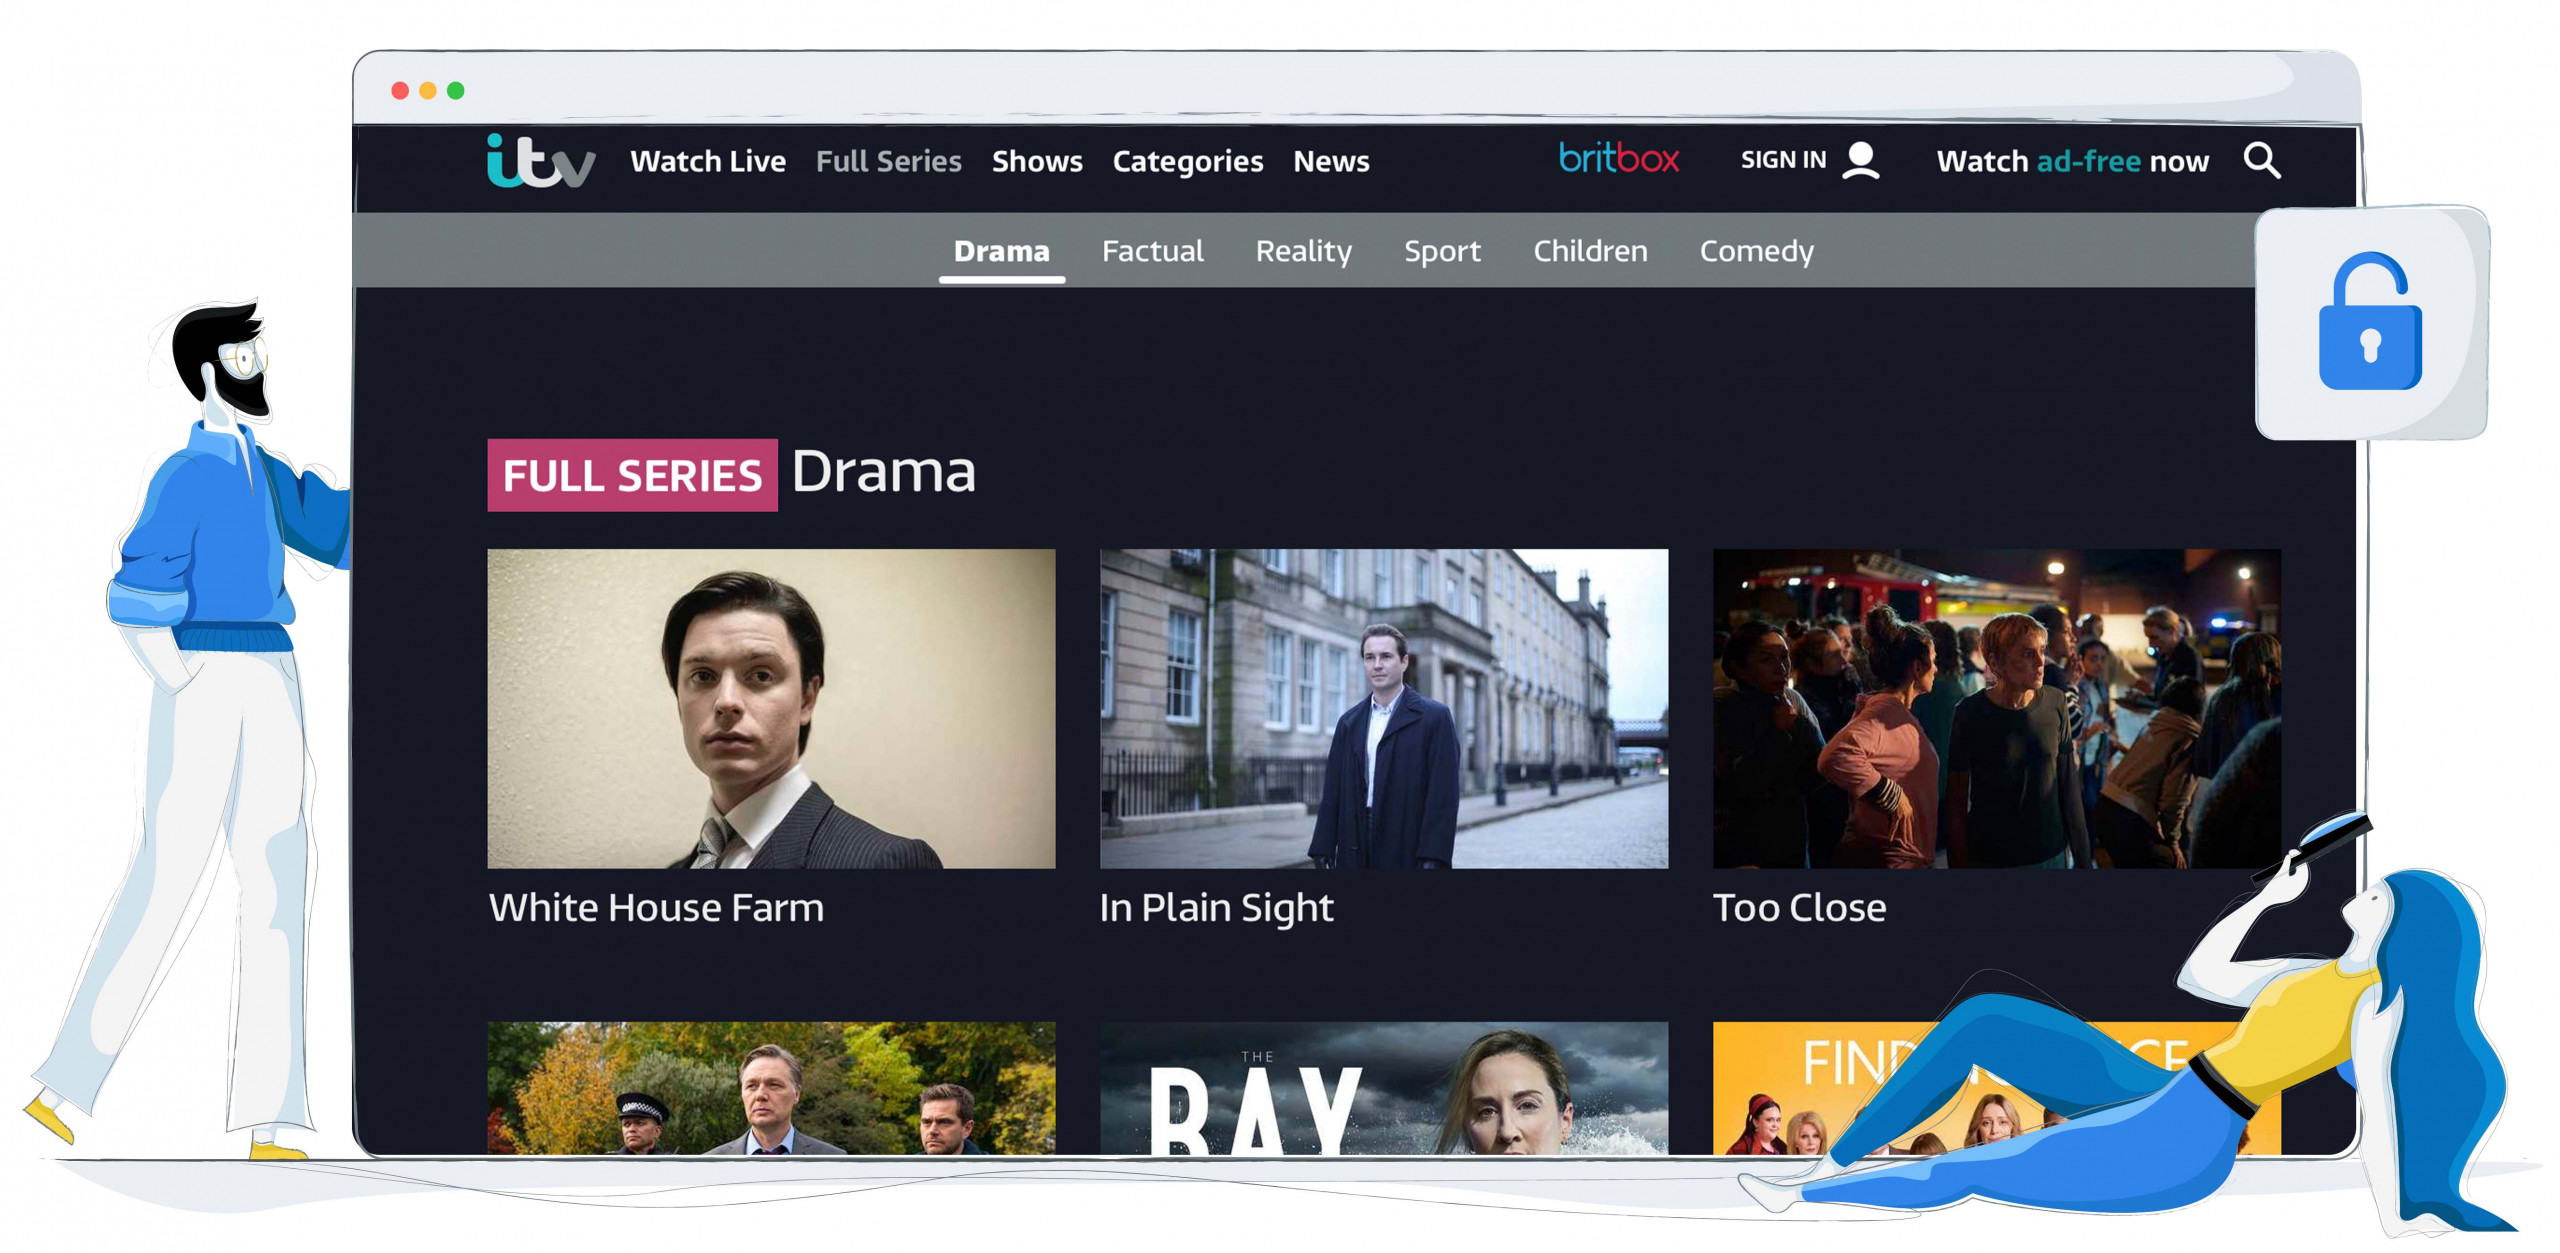 Muchos programas y géneros están disponibles en ITV HUB